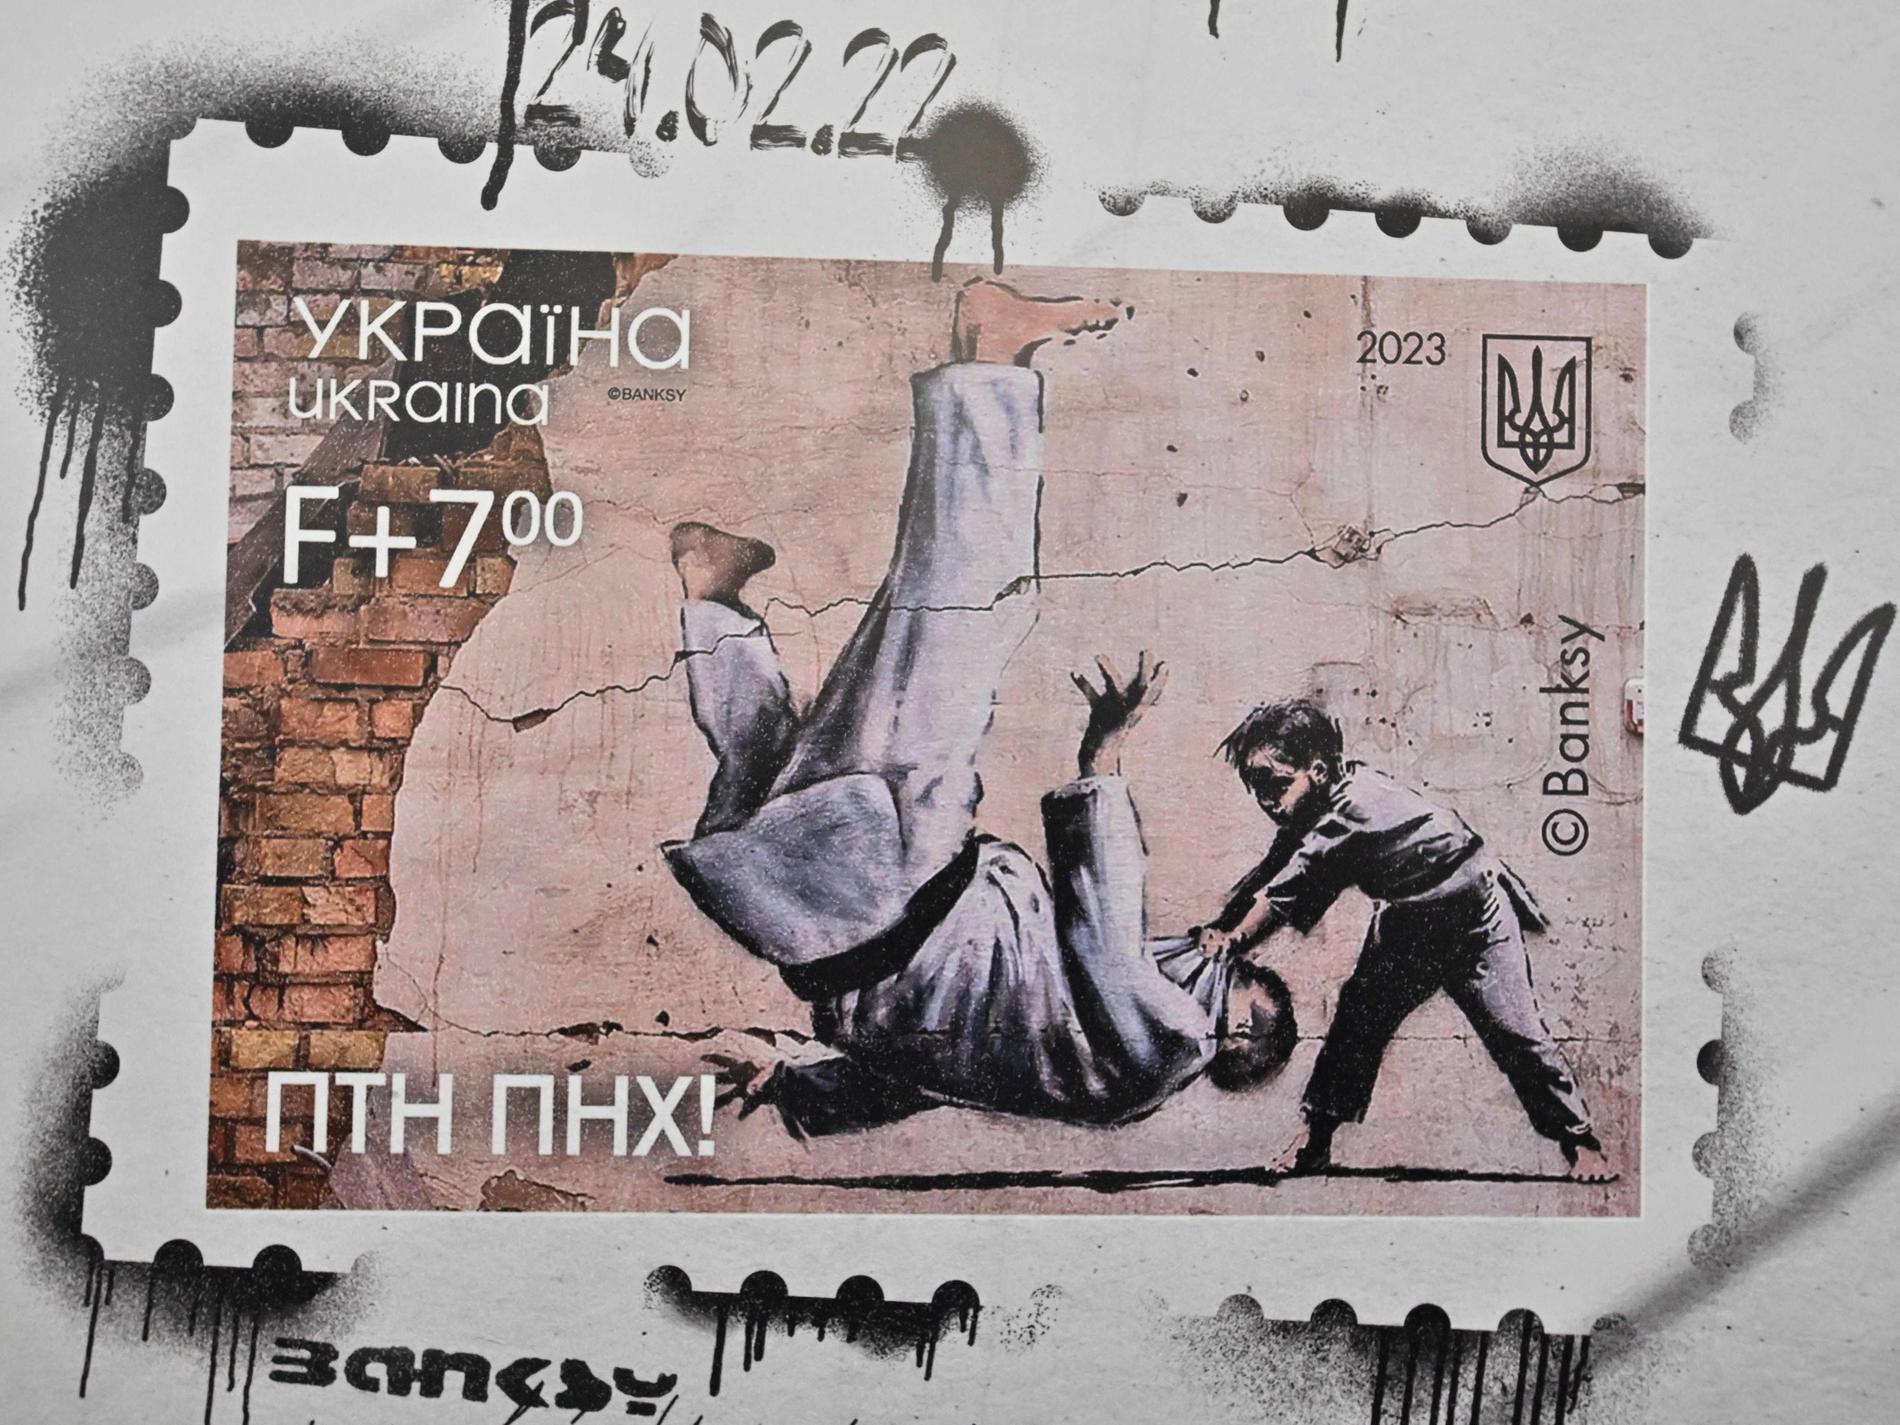 Banksy på ukrainskt jubileumsfrimärke